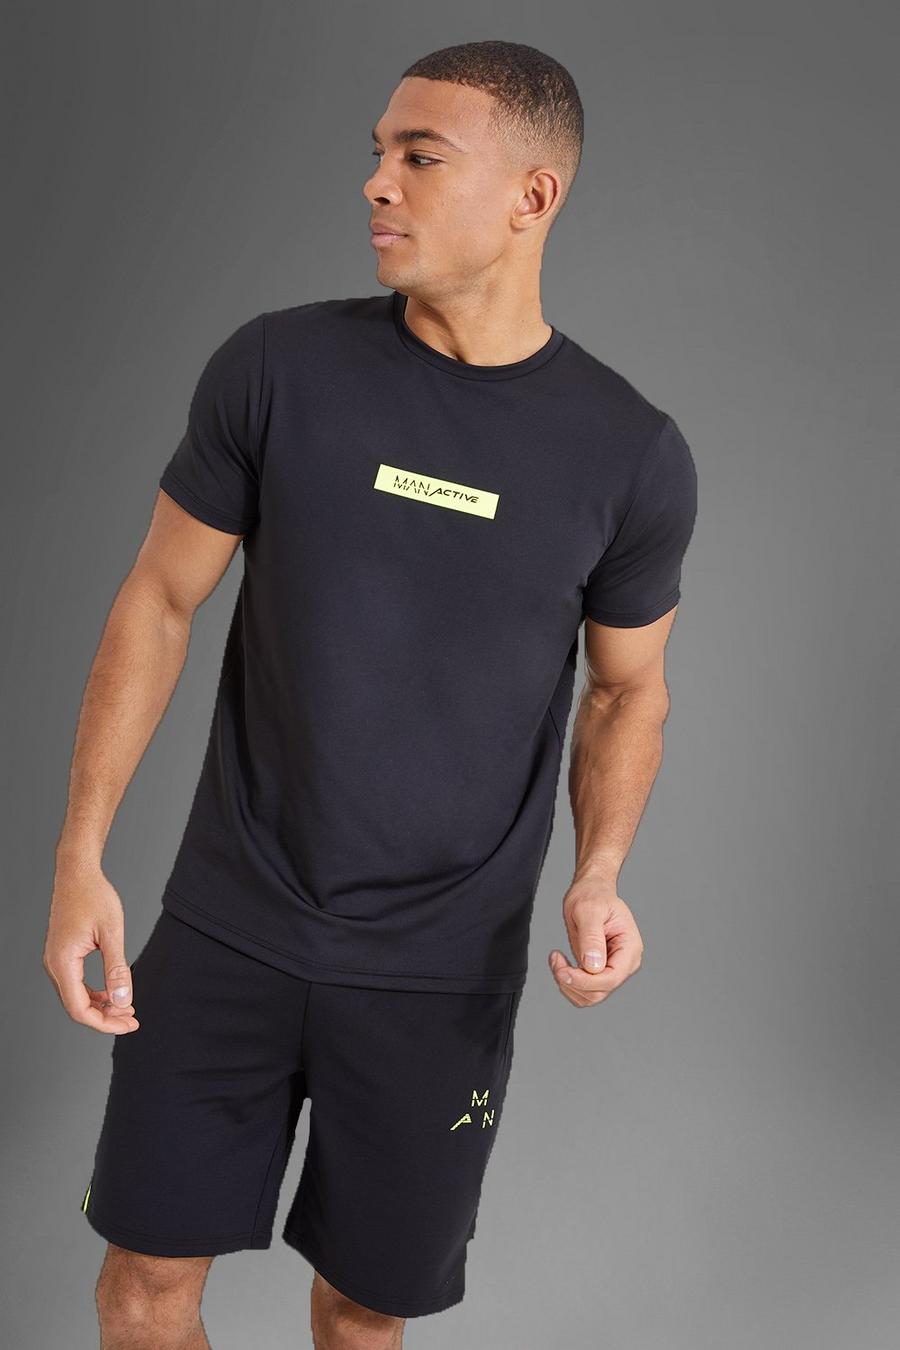 T-shirt Man Active Gym con riquadro e logo in colori fluo, Black nero